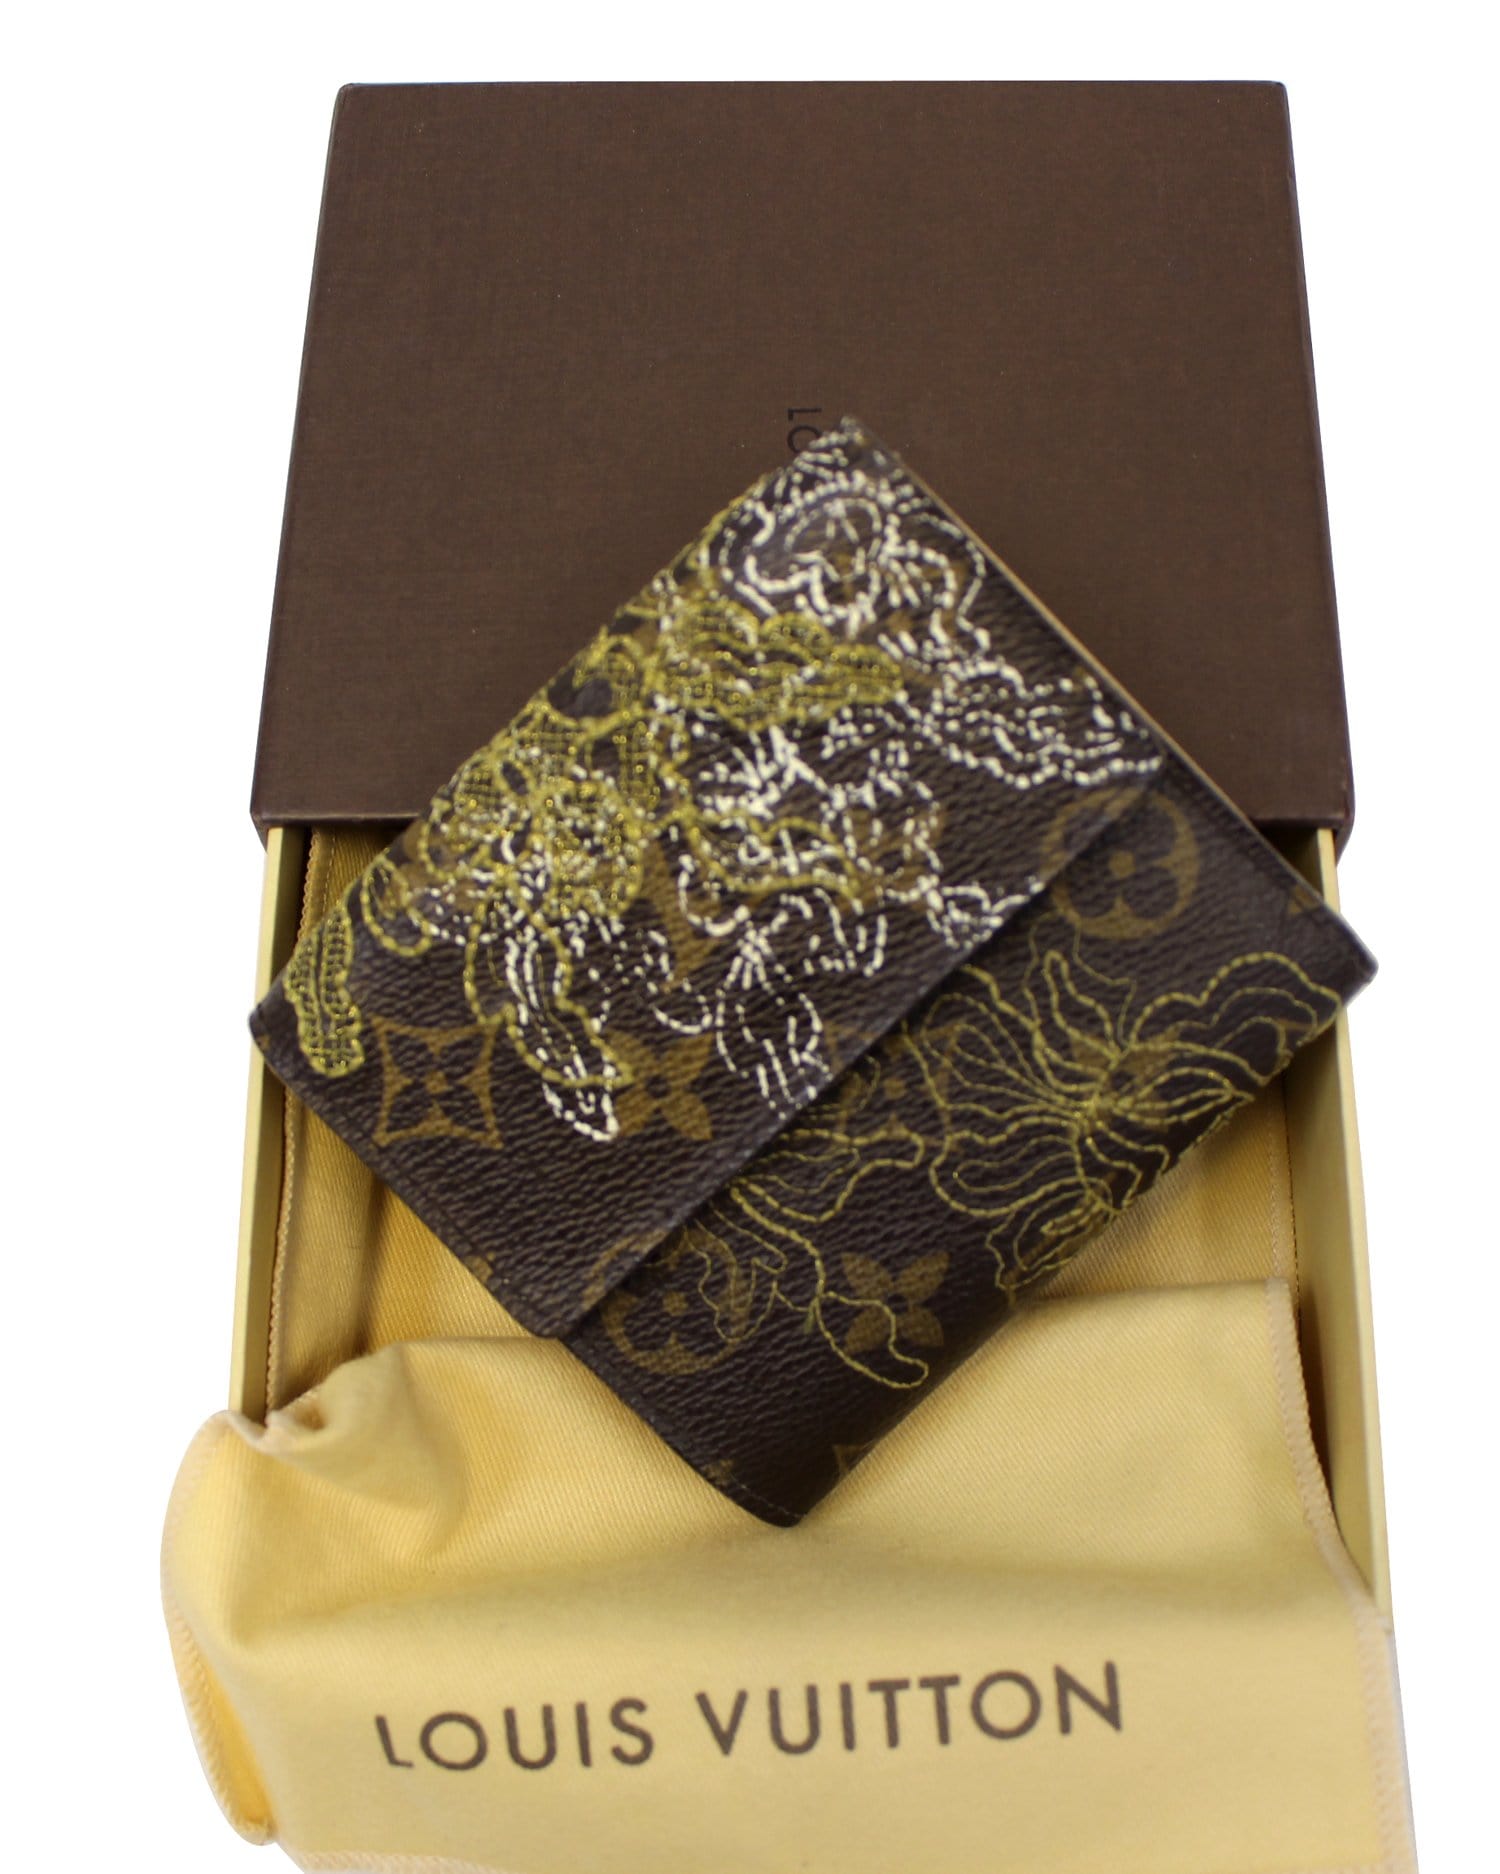 Louis Vuitton Limited Edition Gold Dentelle Monogram Batignolles